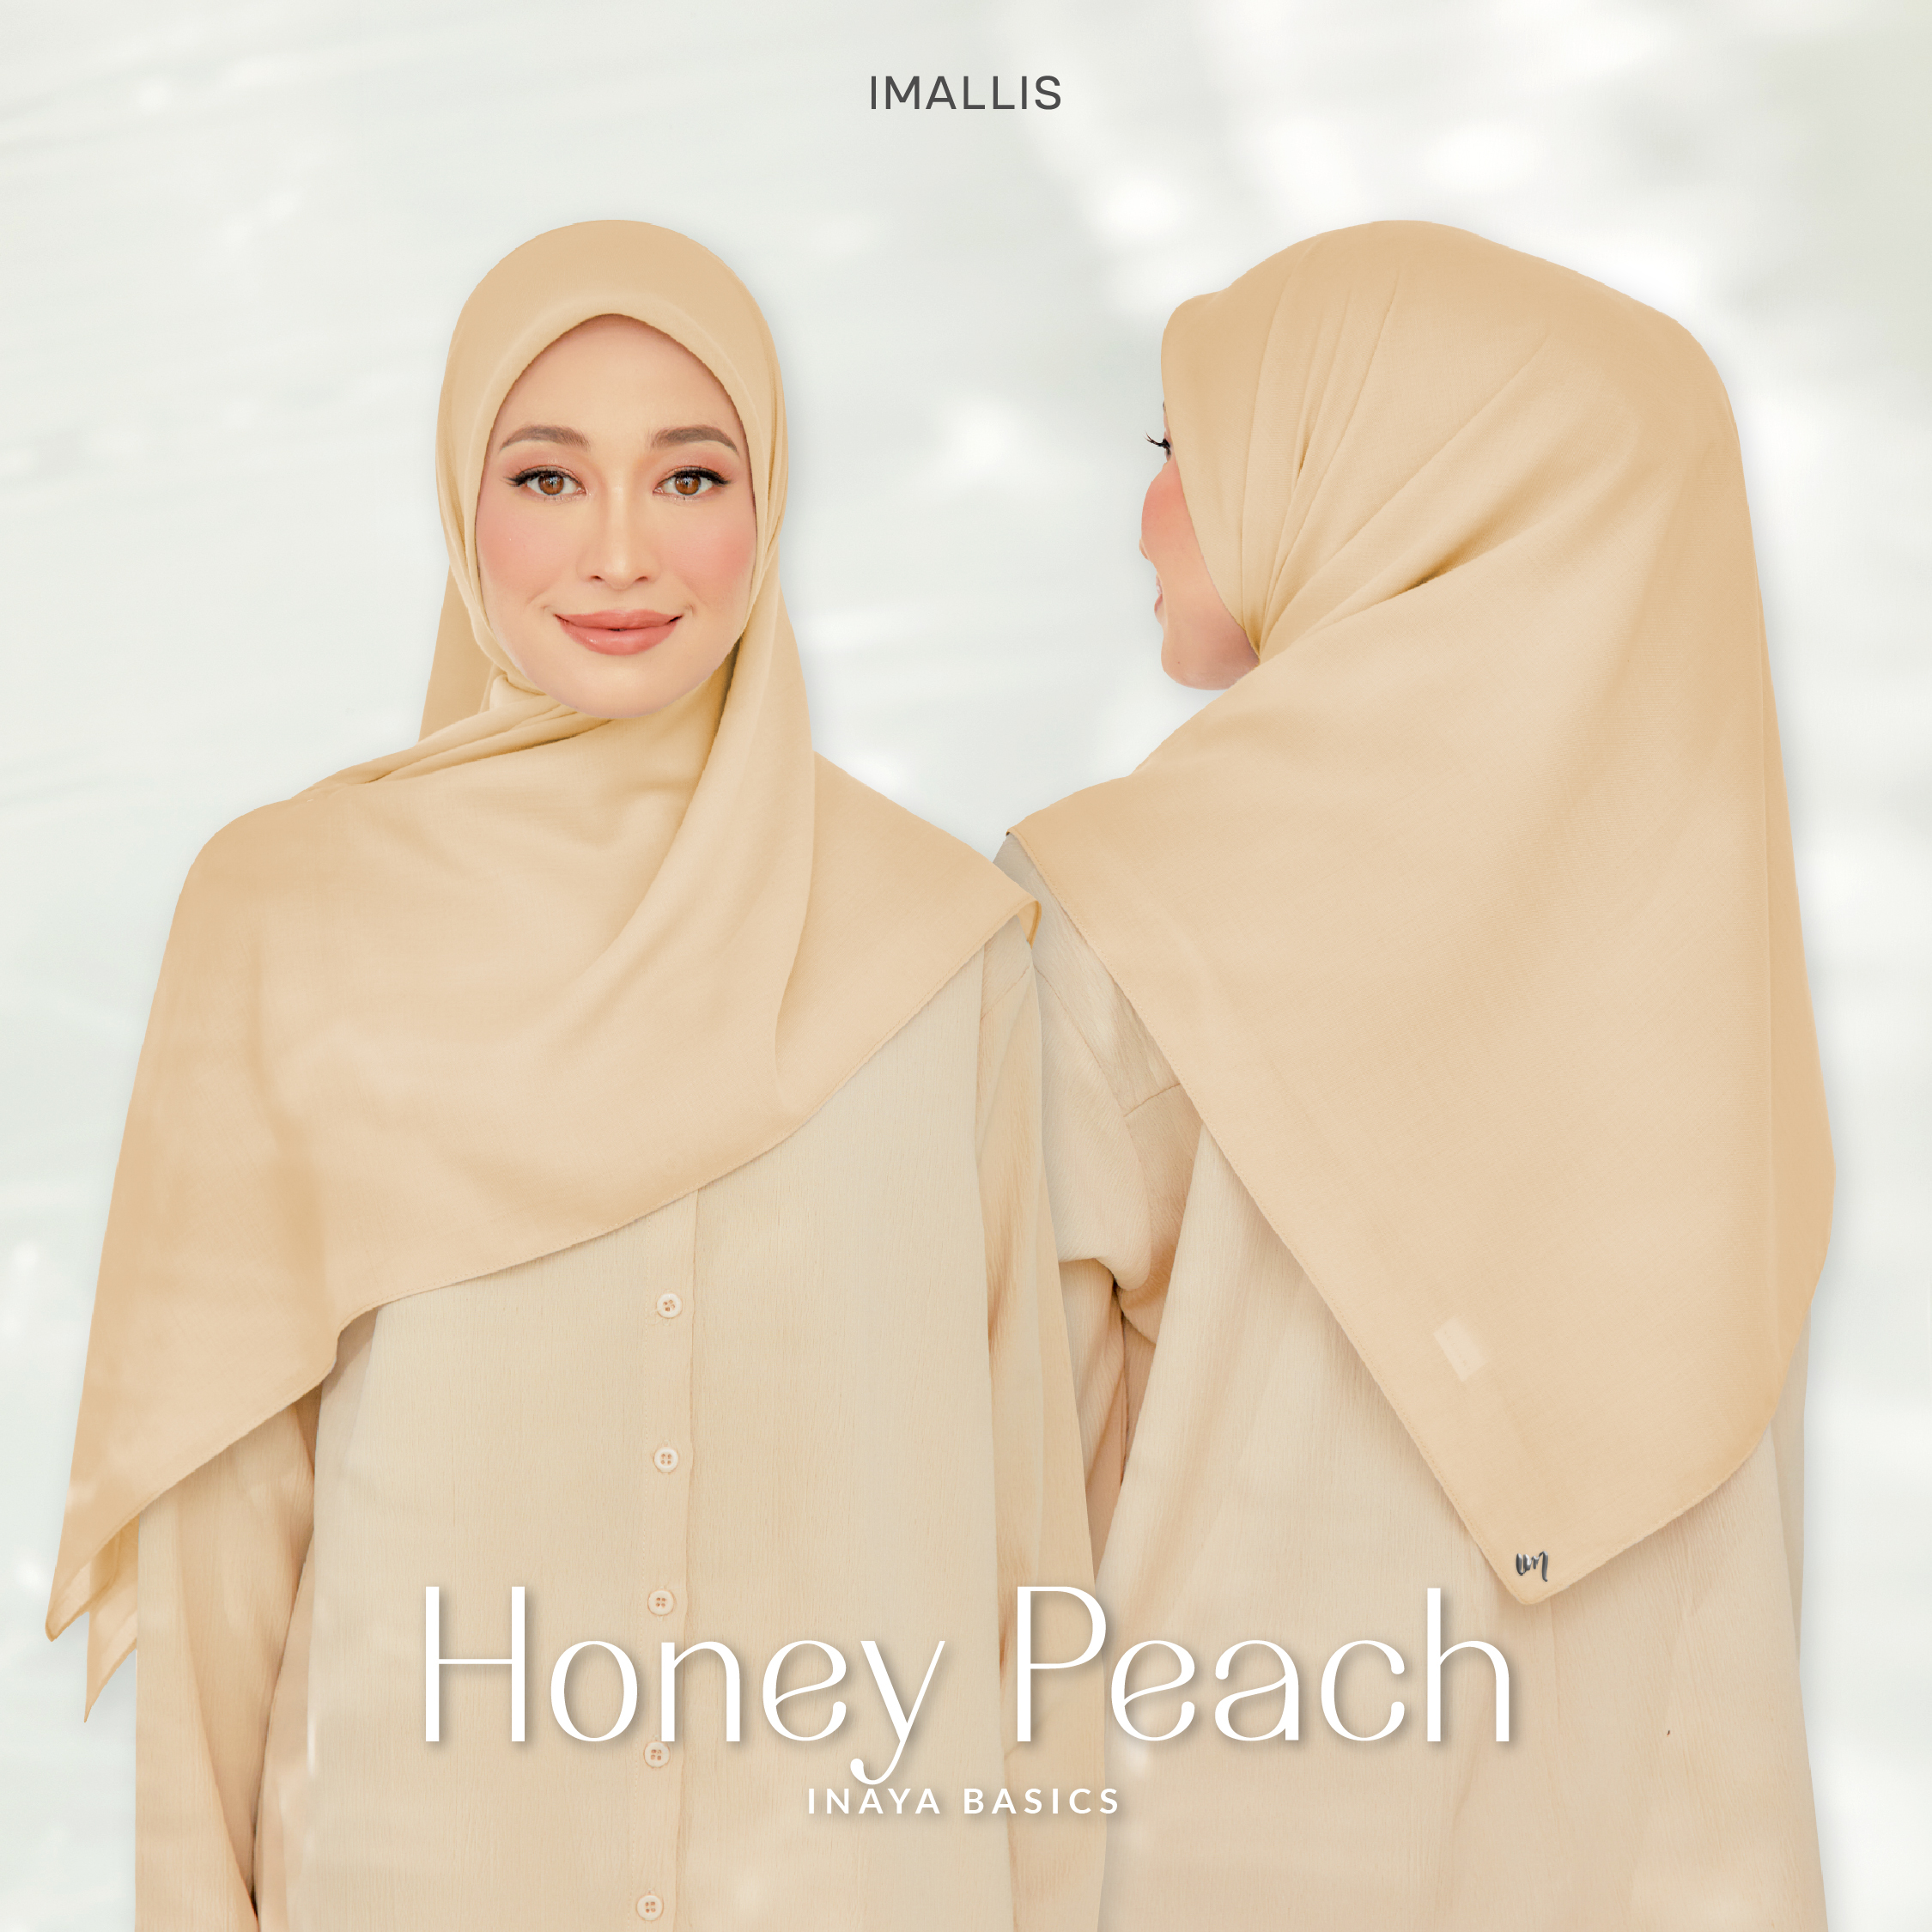 Inaya Basics - Honey Peach-01